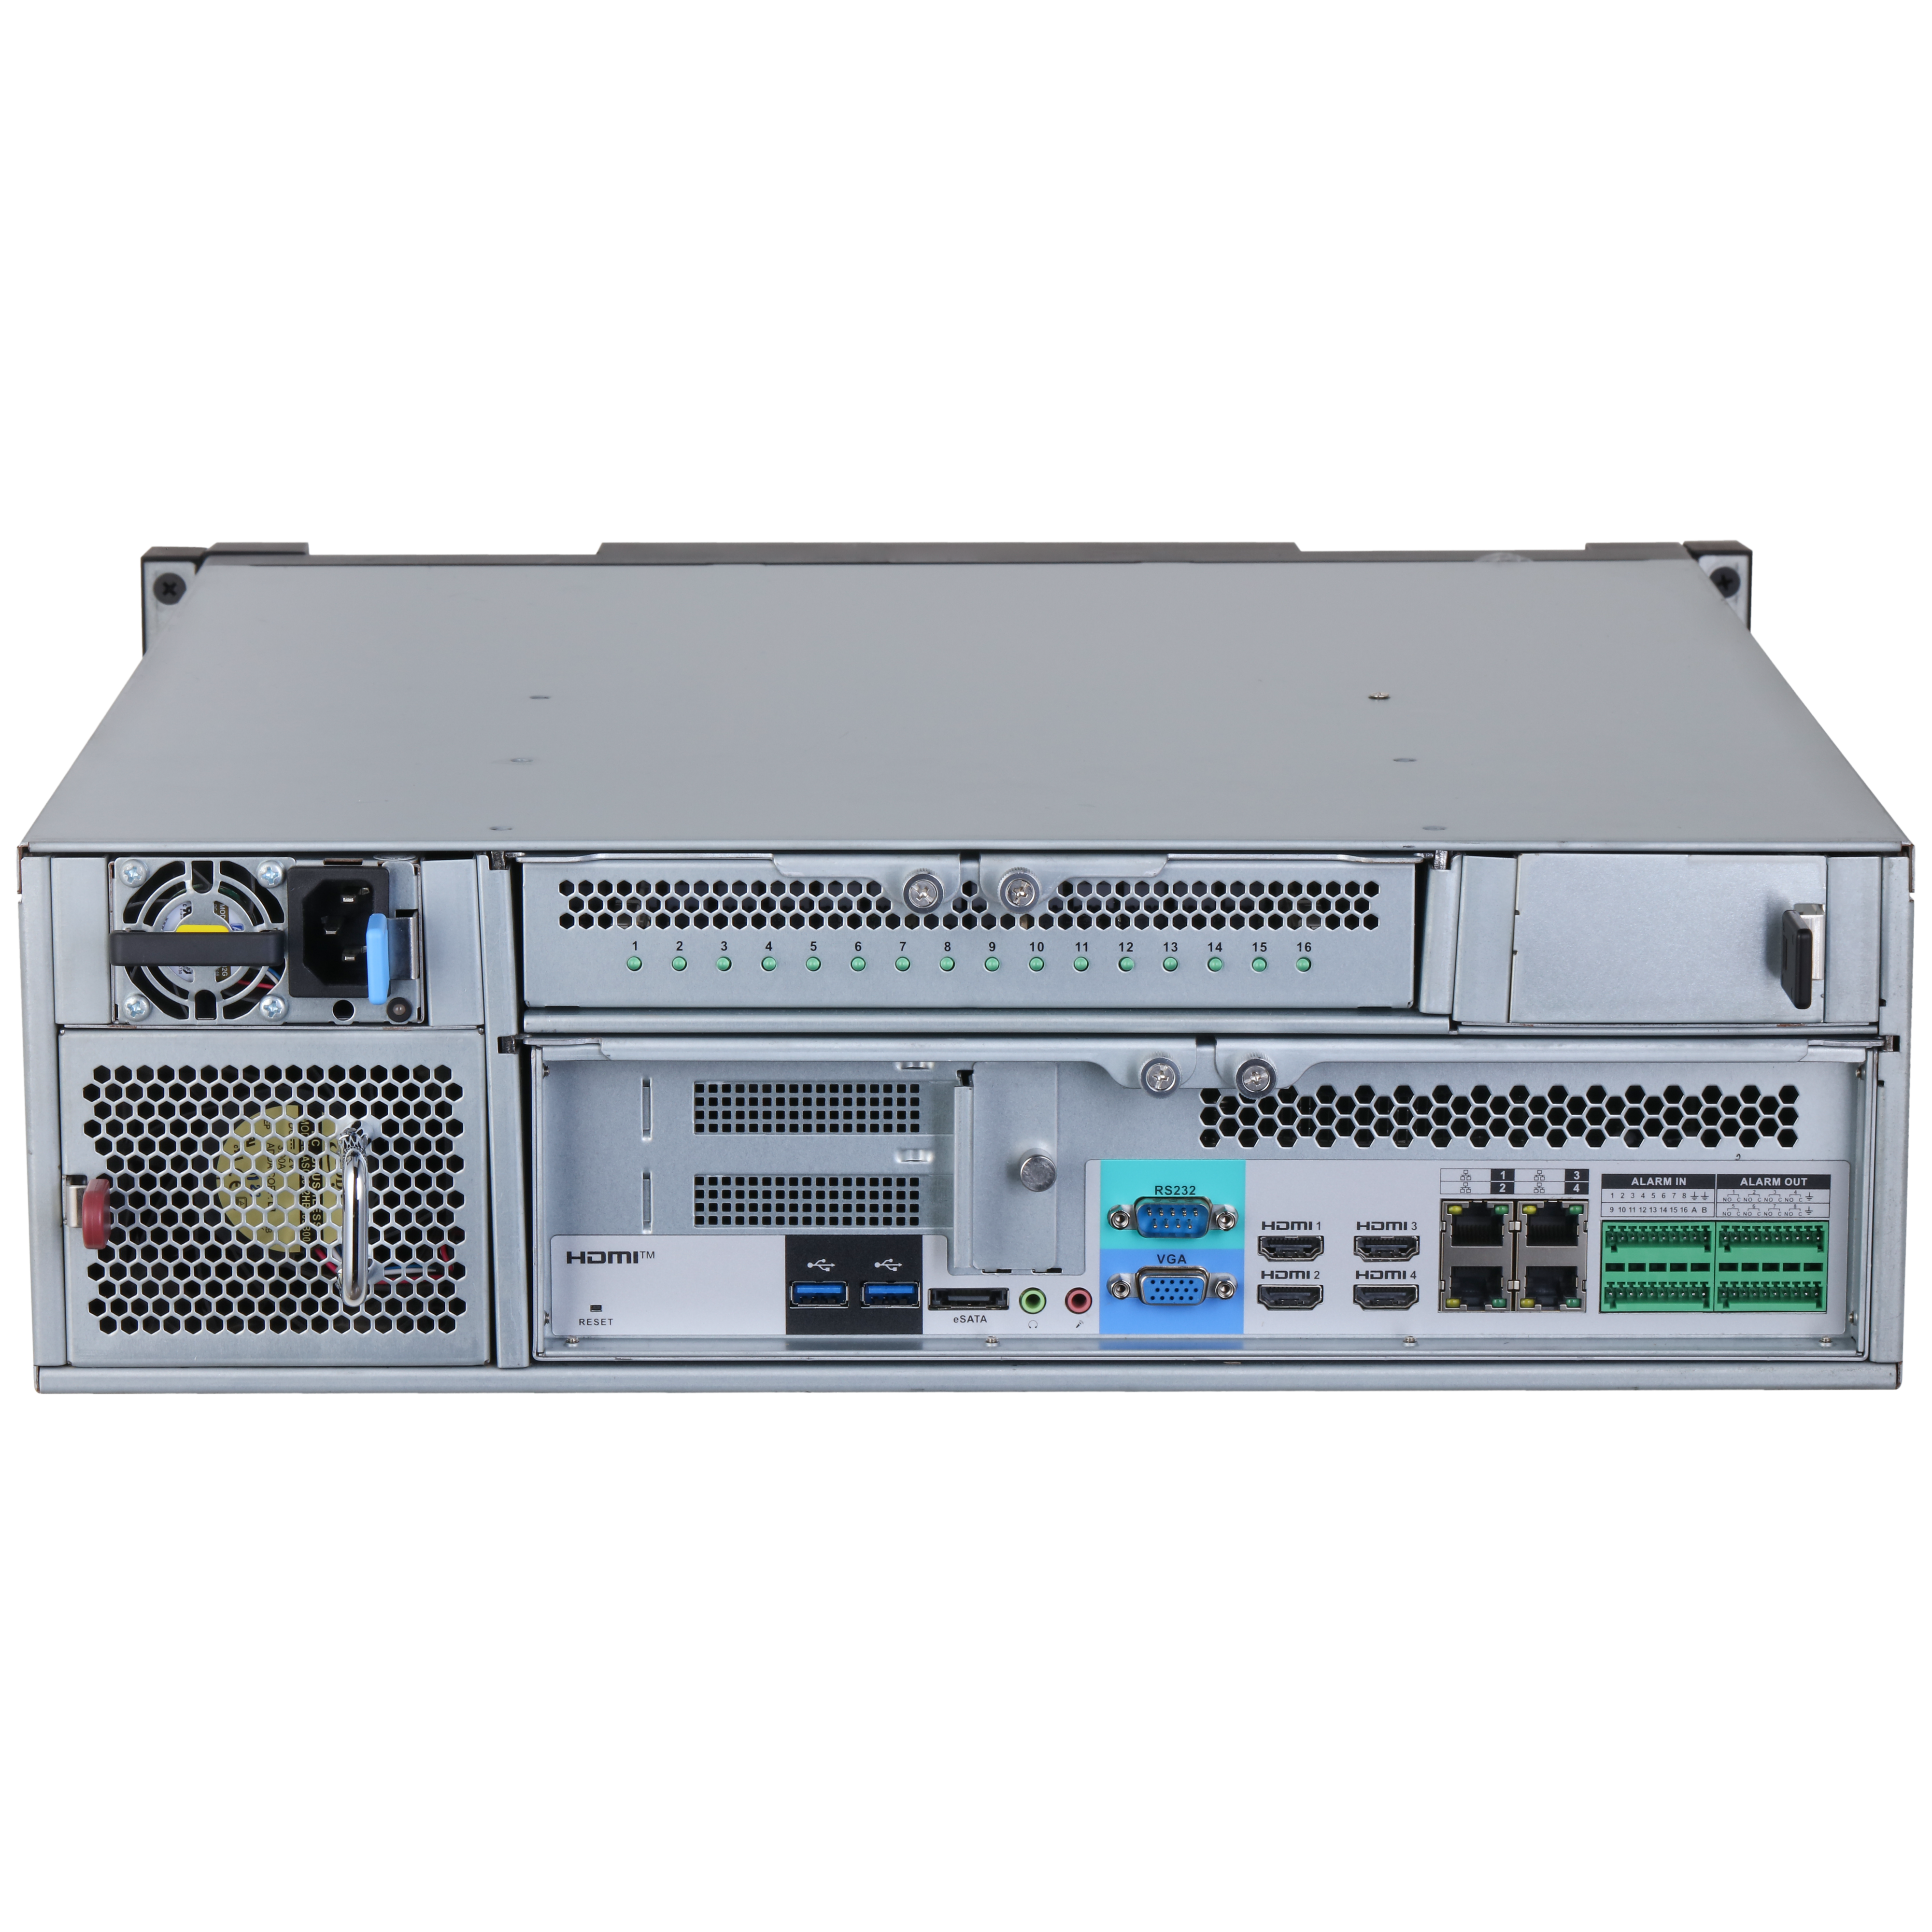 DAHUA IVSS7116-4I 256CH 3U Intelligent Video Surveillance Server